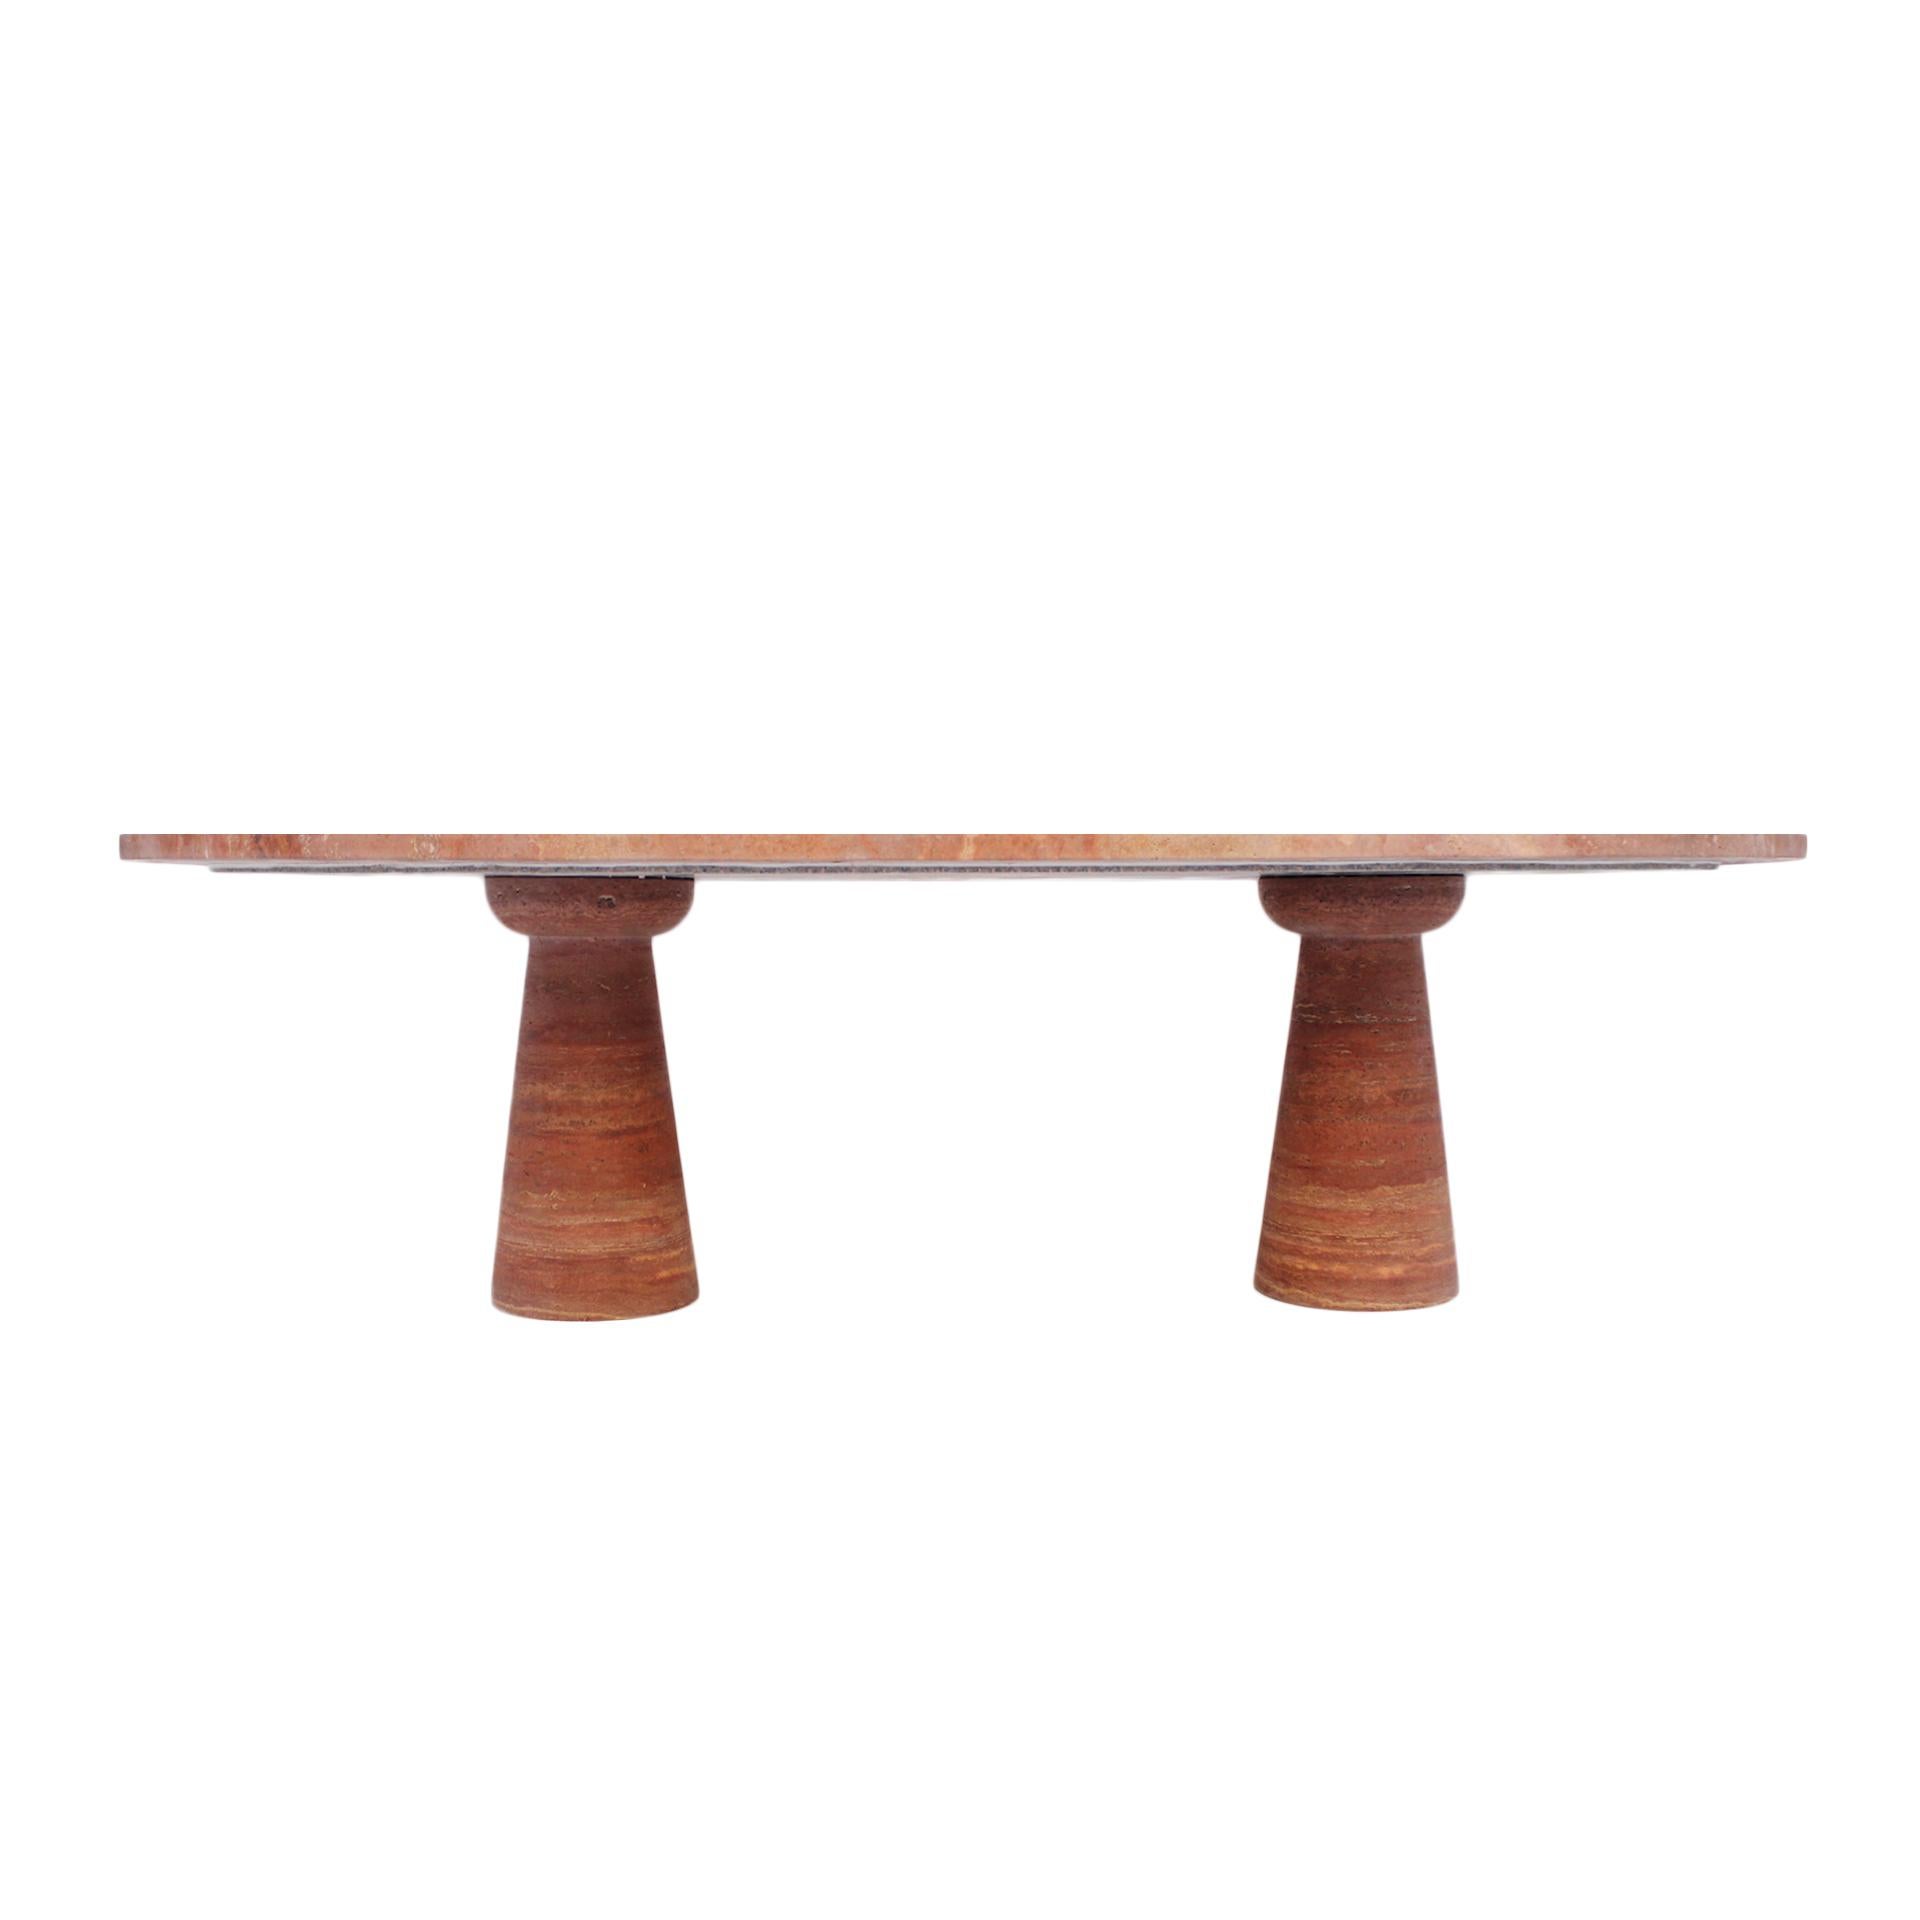 Zeitloses Meisterwerk, Tisch aus rotem Persa-Marmor. Dieser in den 1970er Jahren in Italien gefertigte Tisch ist ein Zeugnis für unvergleichliche Handwerkskunst. Seine großzügigen Abmessungen von 300 x 150 cm bieten reichlich Platz für luxuriöse